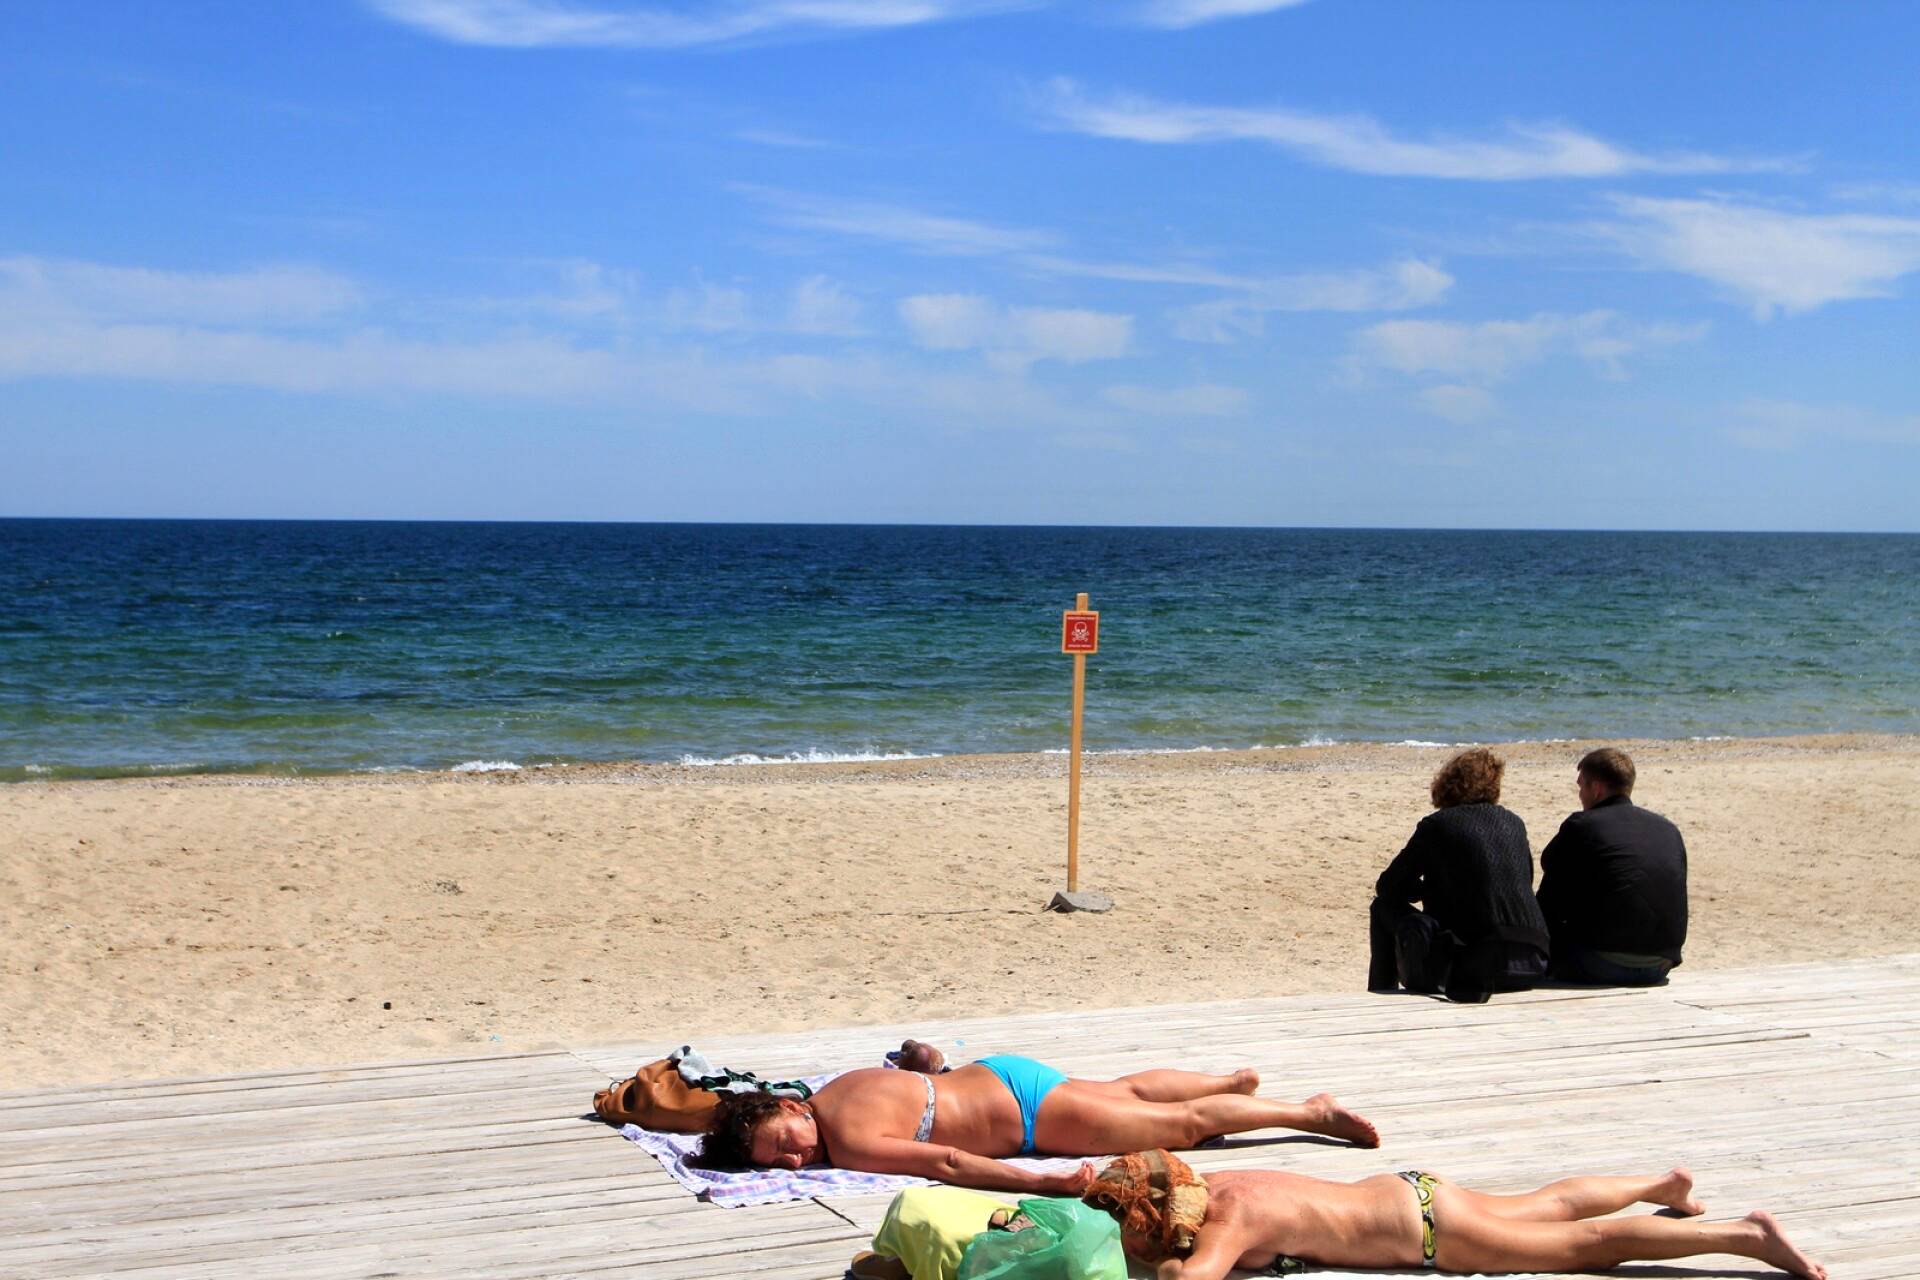 Ihmiset ottivat aurinkoa rannalla Odessassa. Taustalla olevassa kyltissä varoitetaan miinoista.